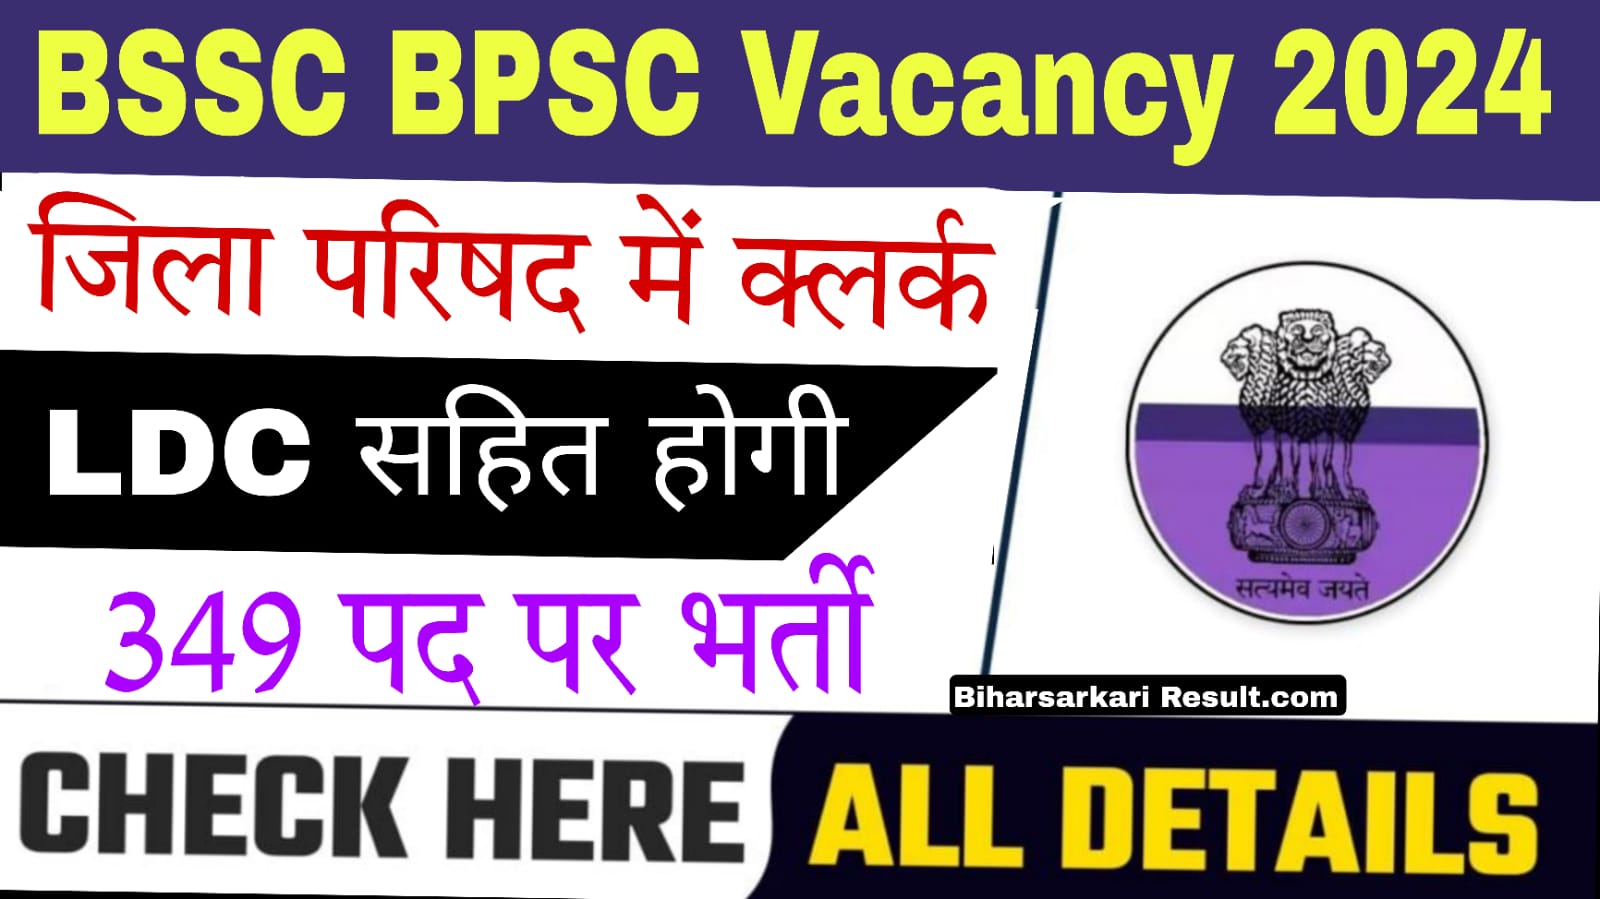 BSSC BPSC Vacancy 2024 :-बिहार में होगी क्लर्क, LDC जिला परिषद में 349 पदों पर होगी भर्ती